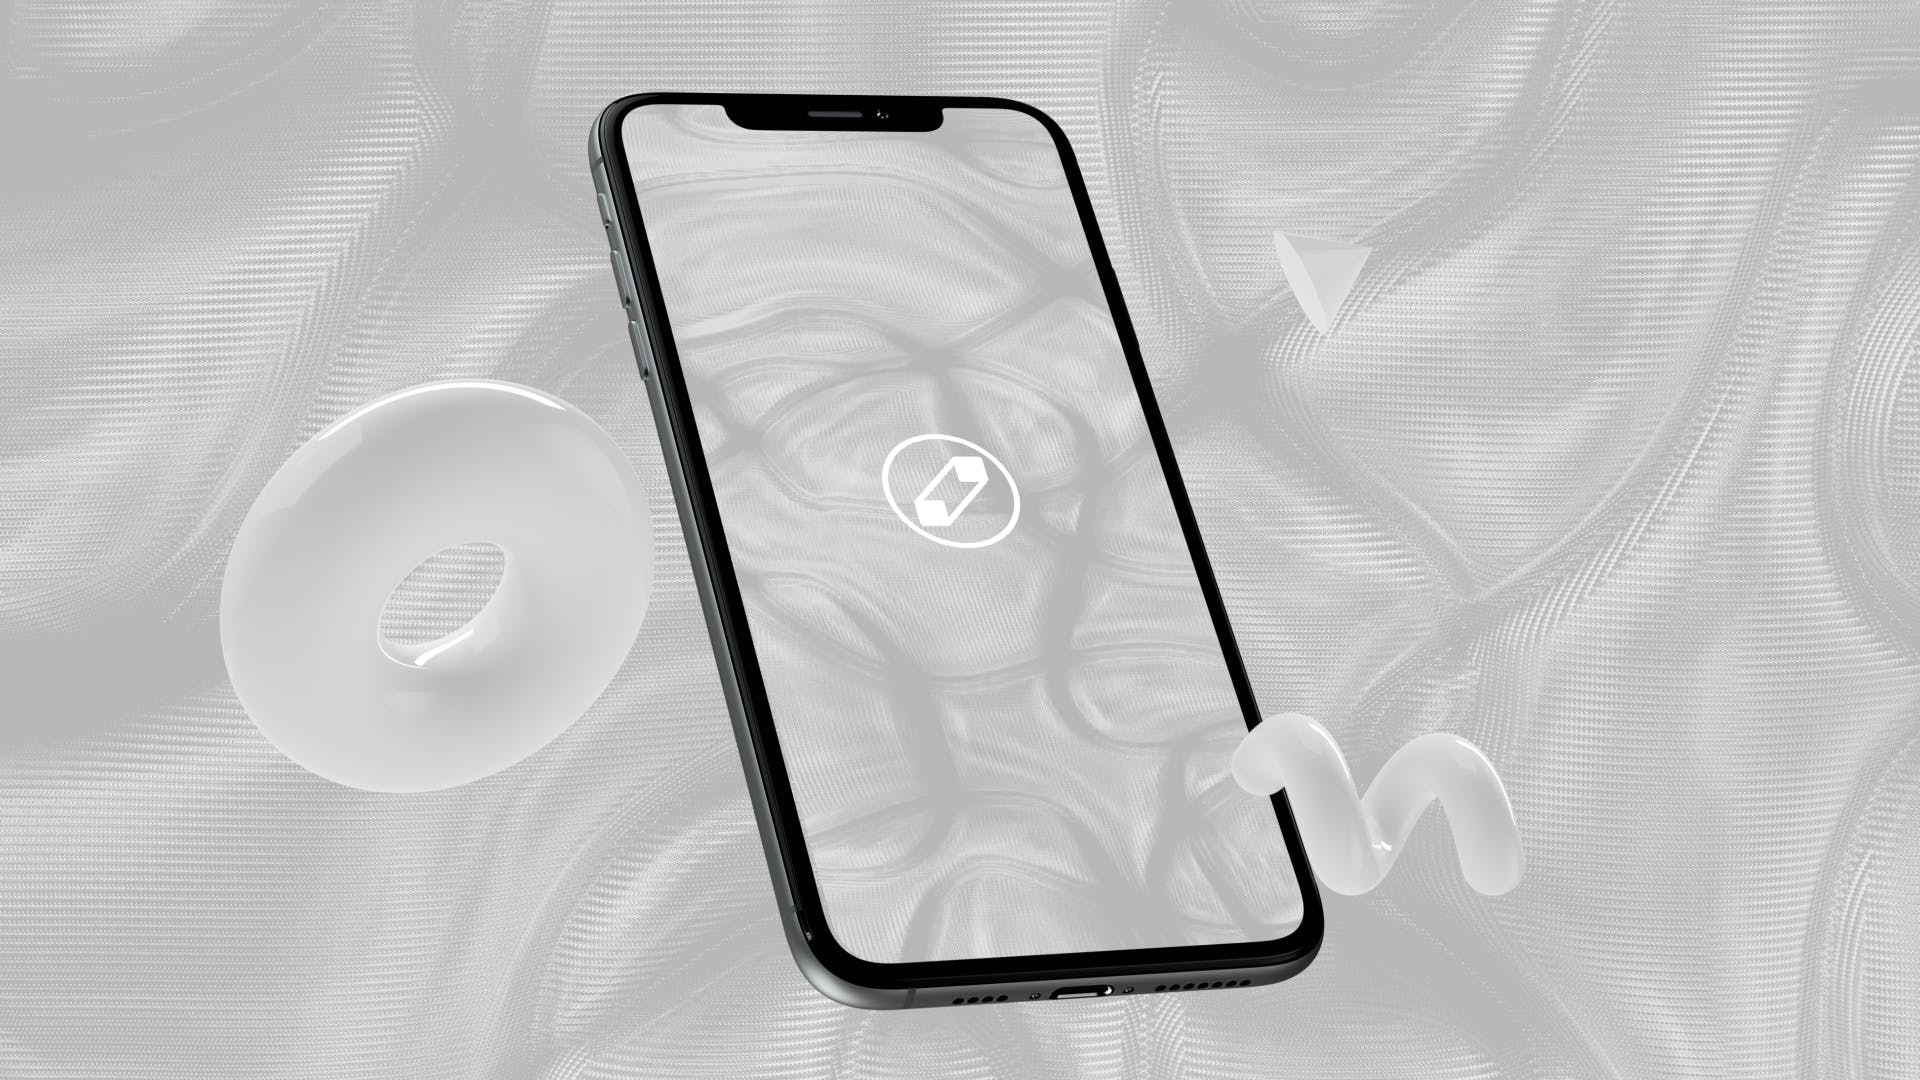 优雅时尚风格3D立体风格iPhone手机屏幕预览大洋岛精选样机 10 Light Phone Mockups插图5